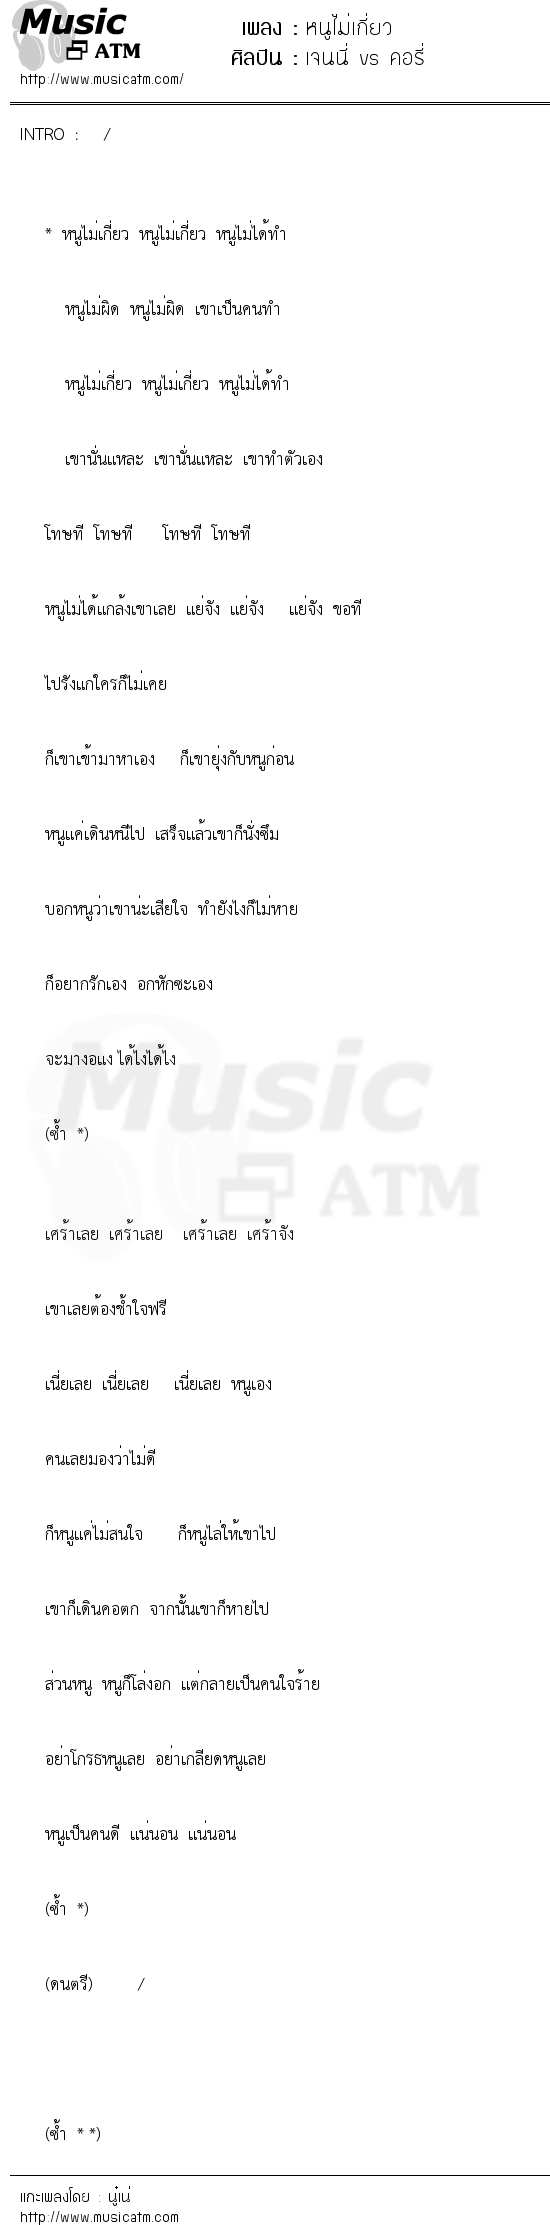 เนื้อเพลง หนูไม่เกี่ยว - เจนนี่ vs คอรี่ | เพลงไทย